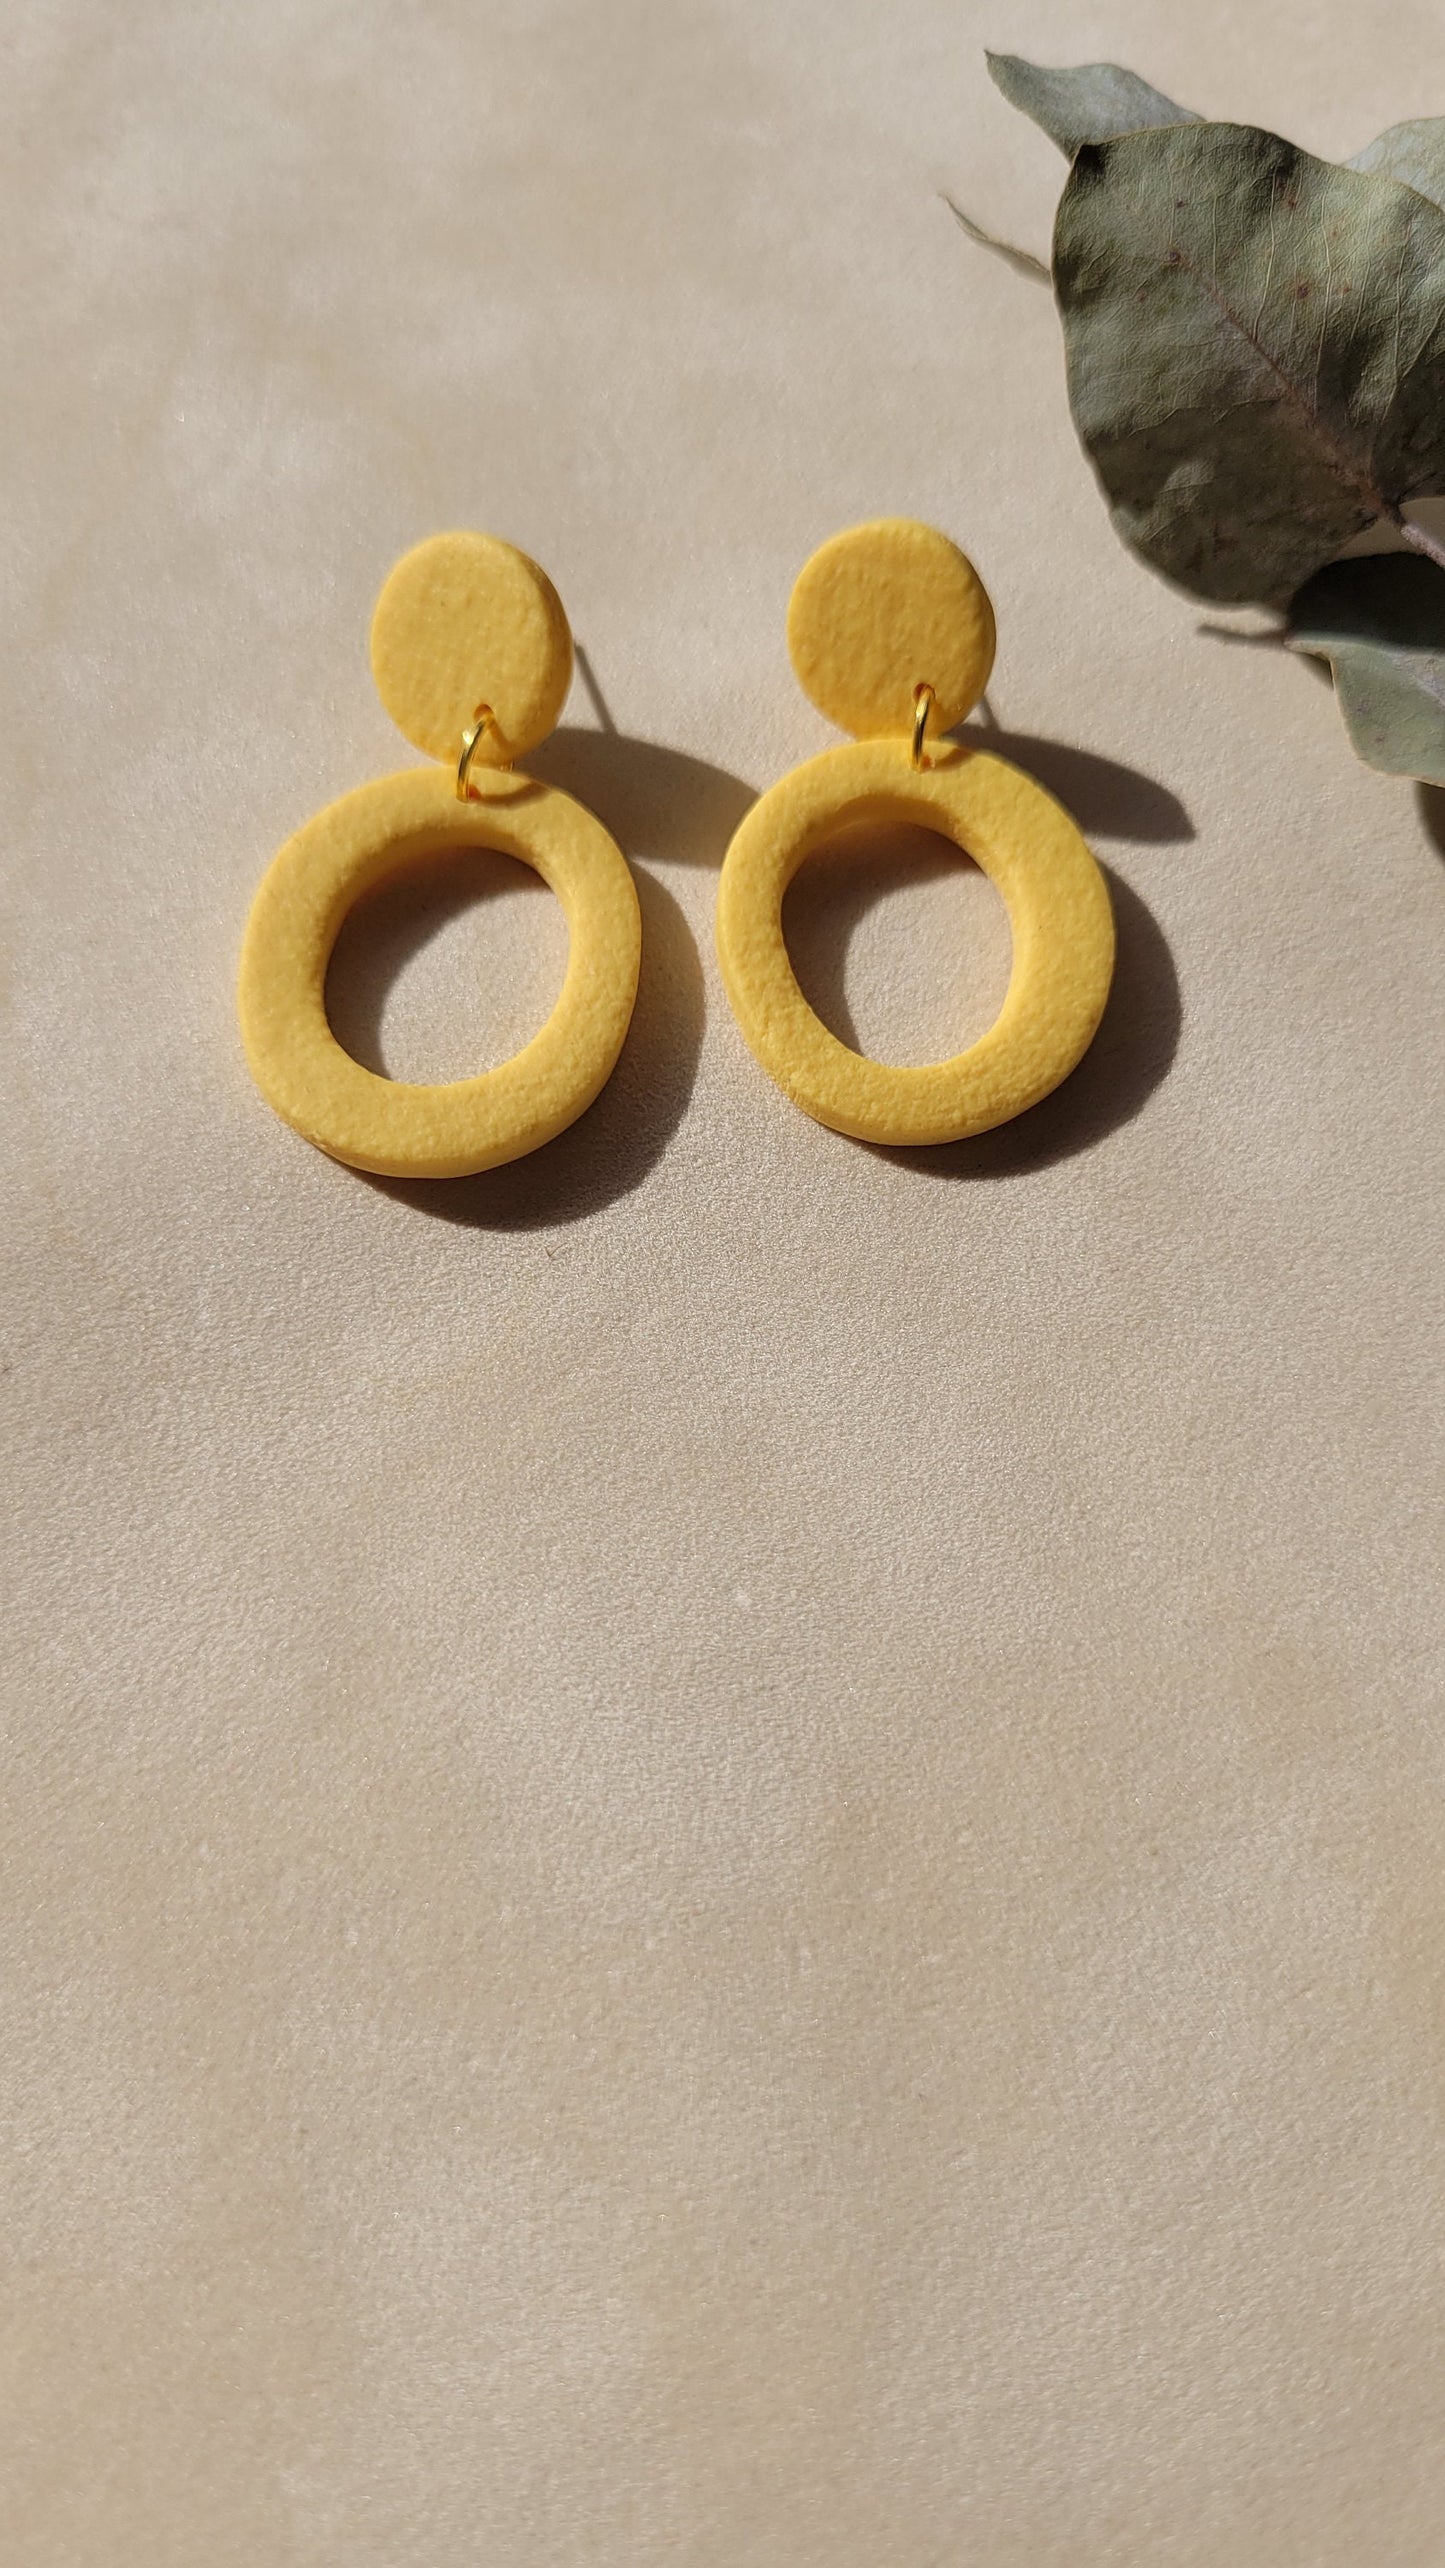 Hängende Ohrringe in Gelb